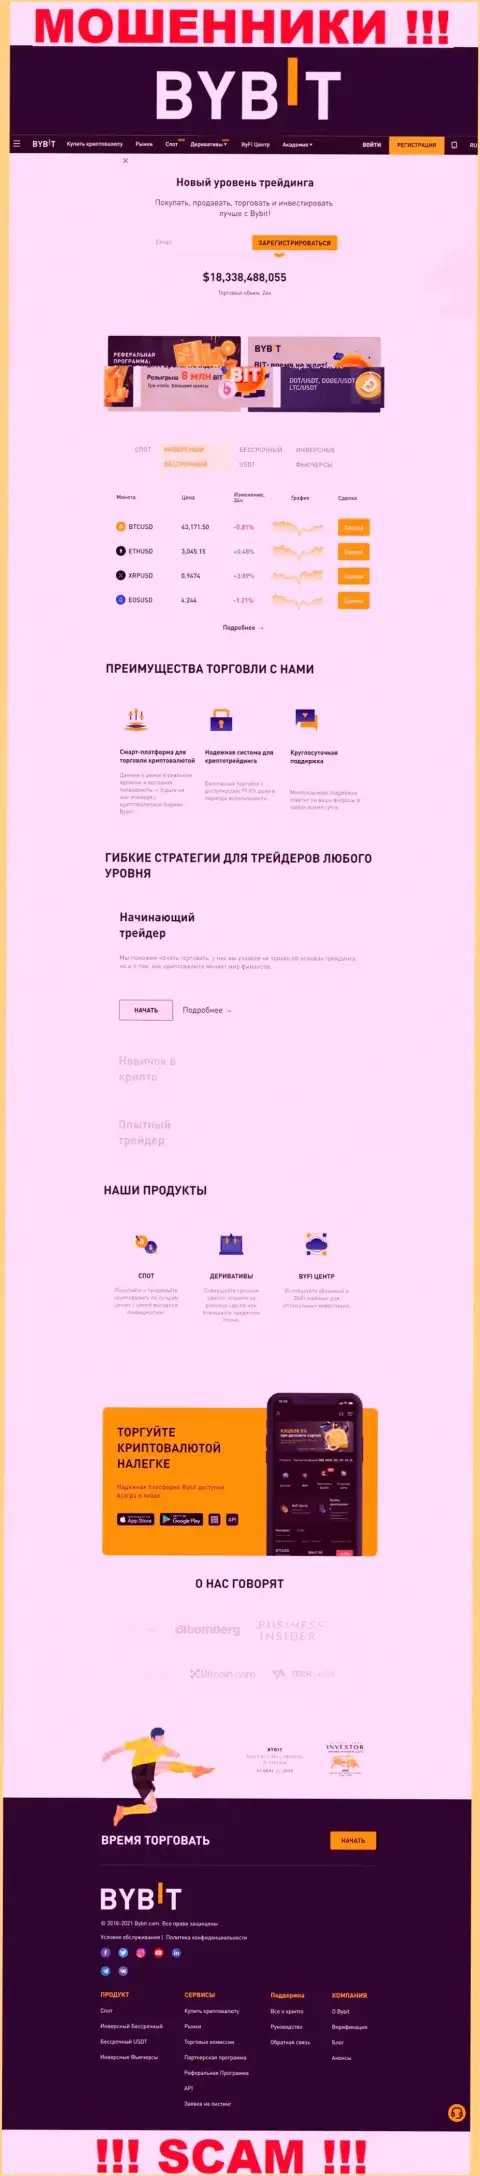 Главная страничка официального интернет-ресурса мошенников БайБит Ком